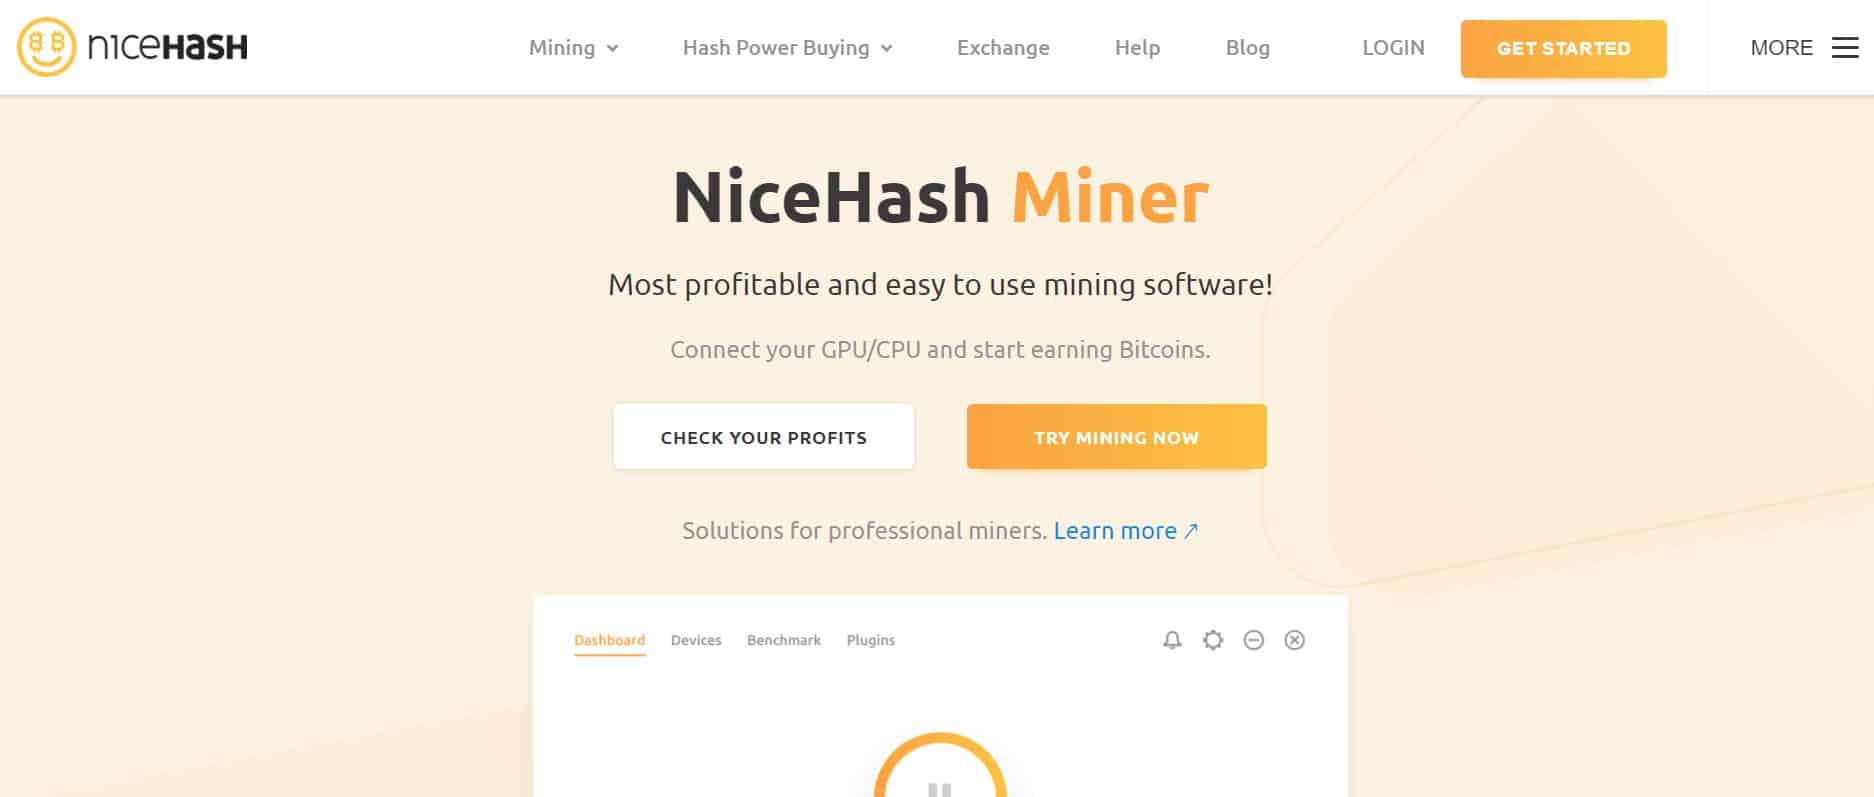 NiceHash website